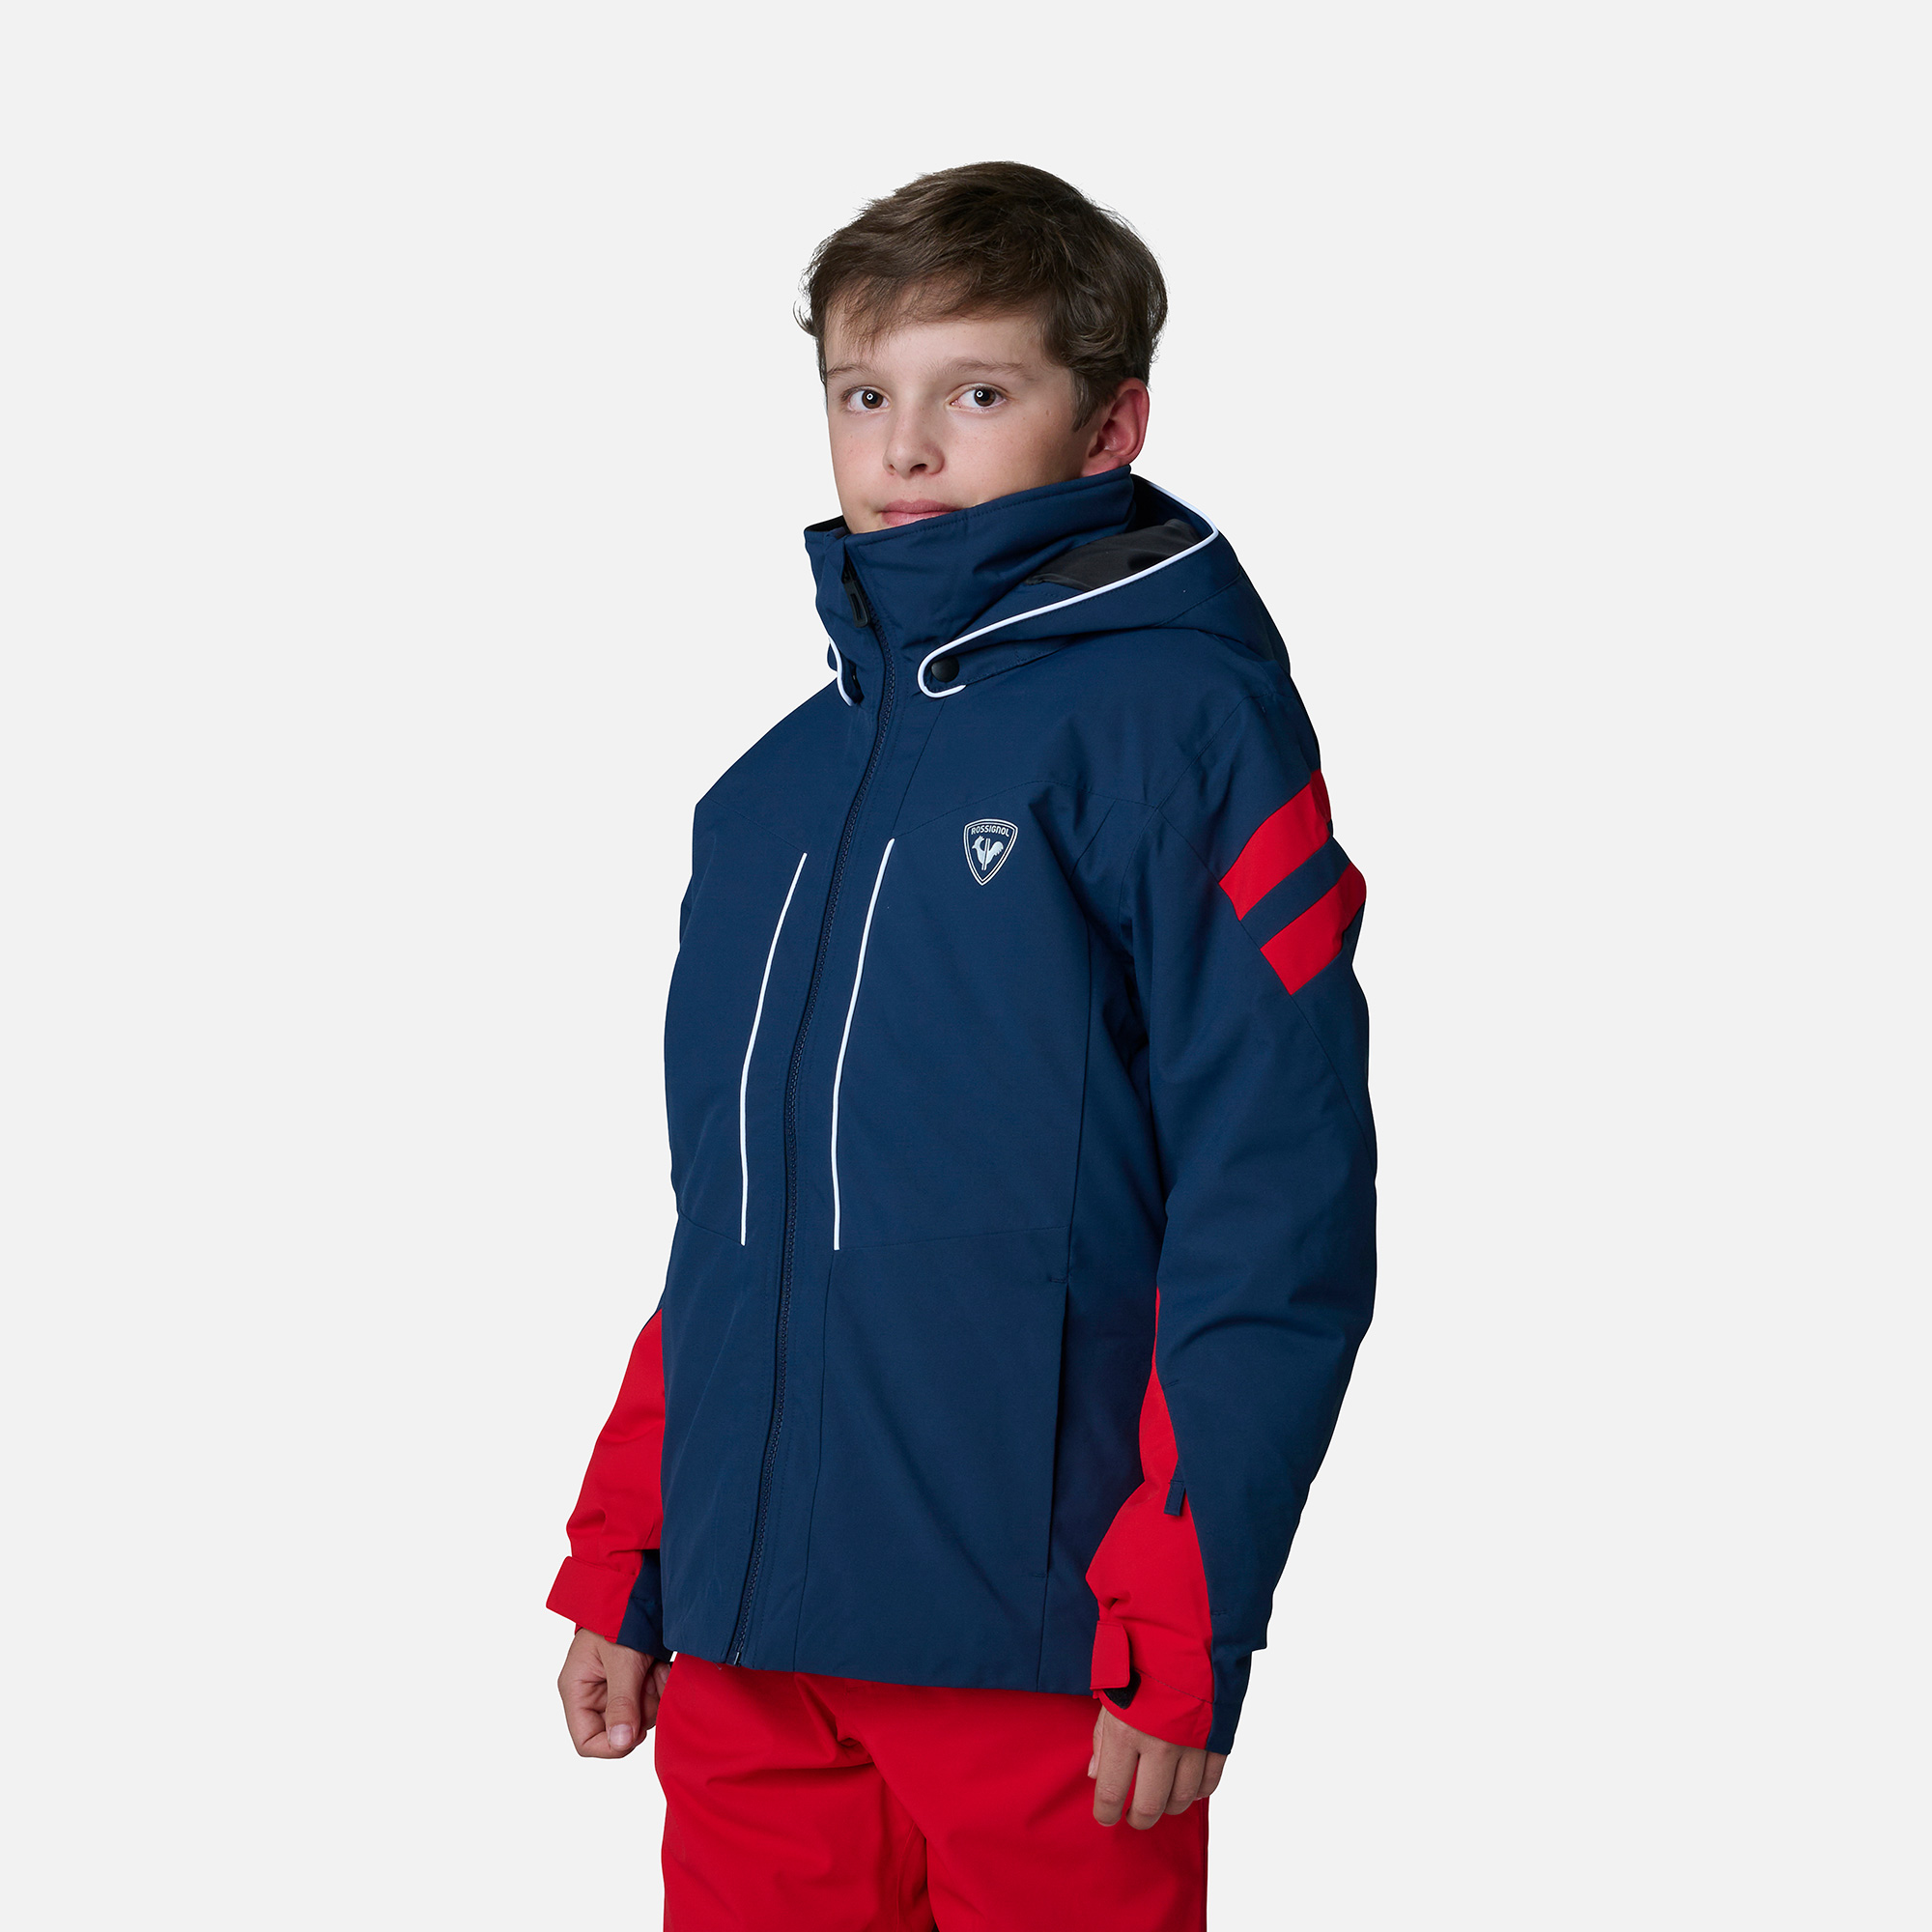 Veste ski enfant, blouson de ski pour garçon et fille